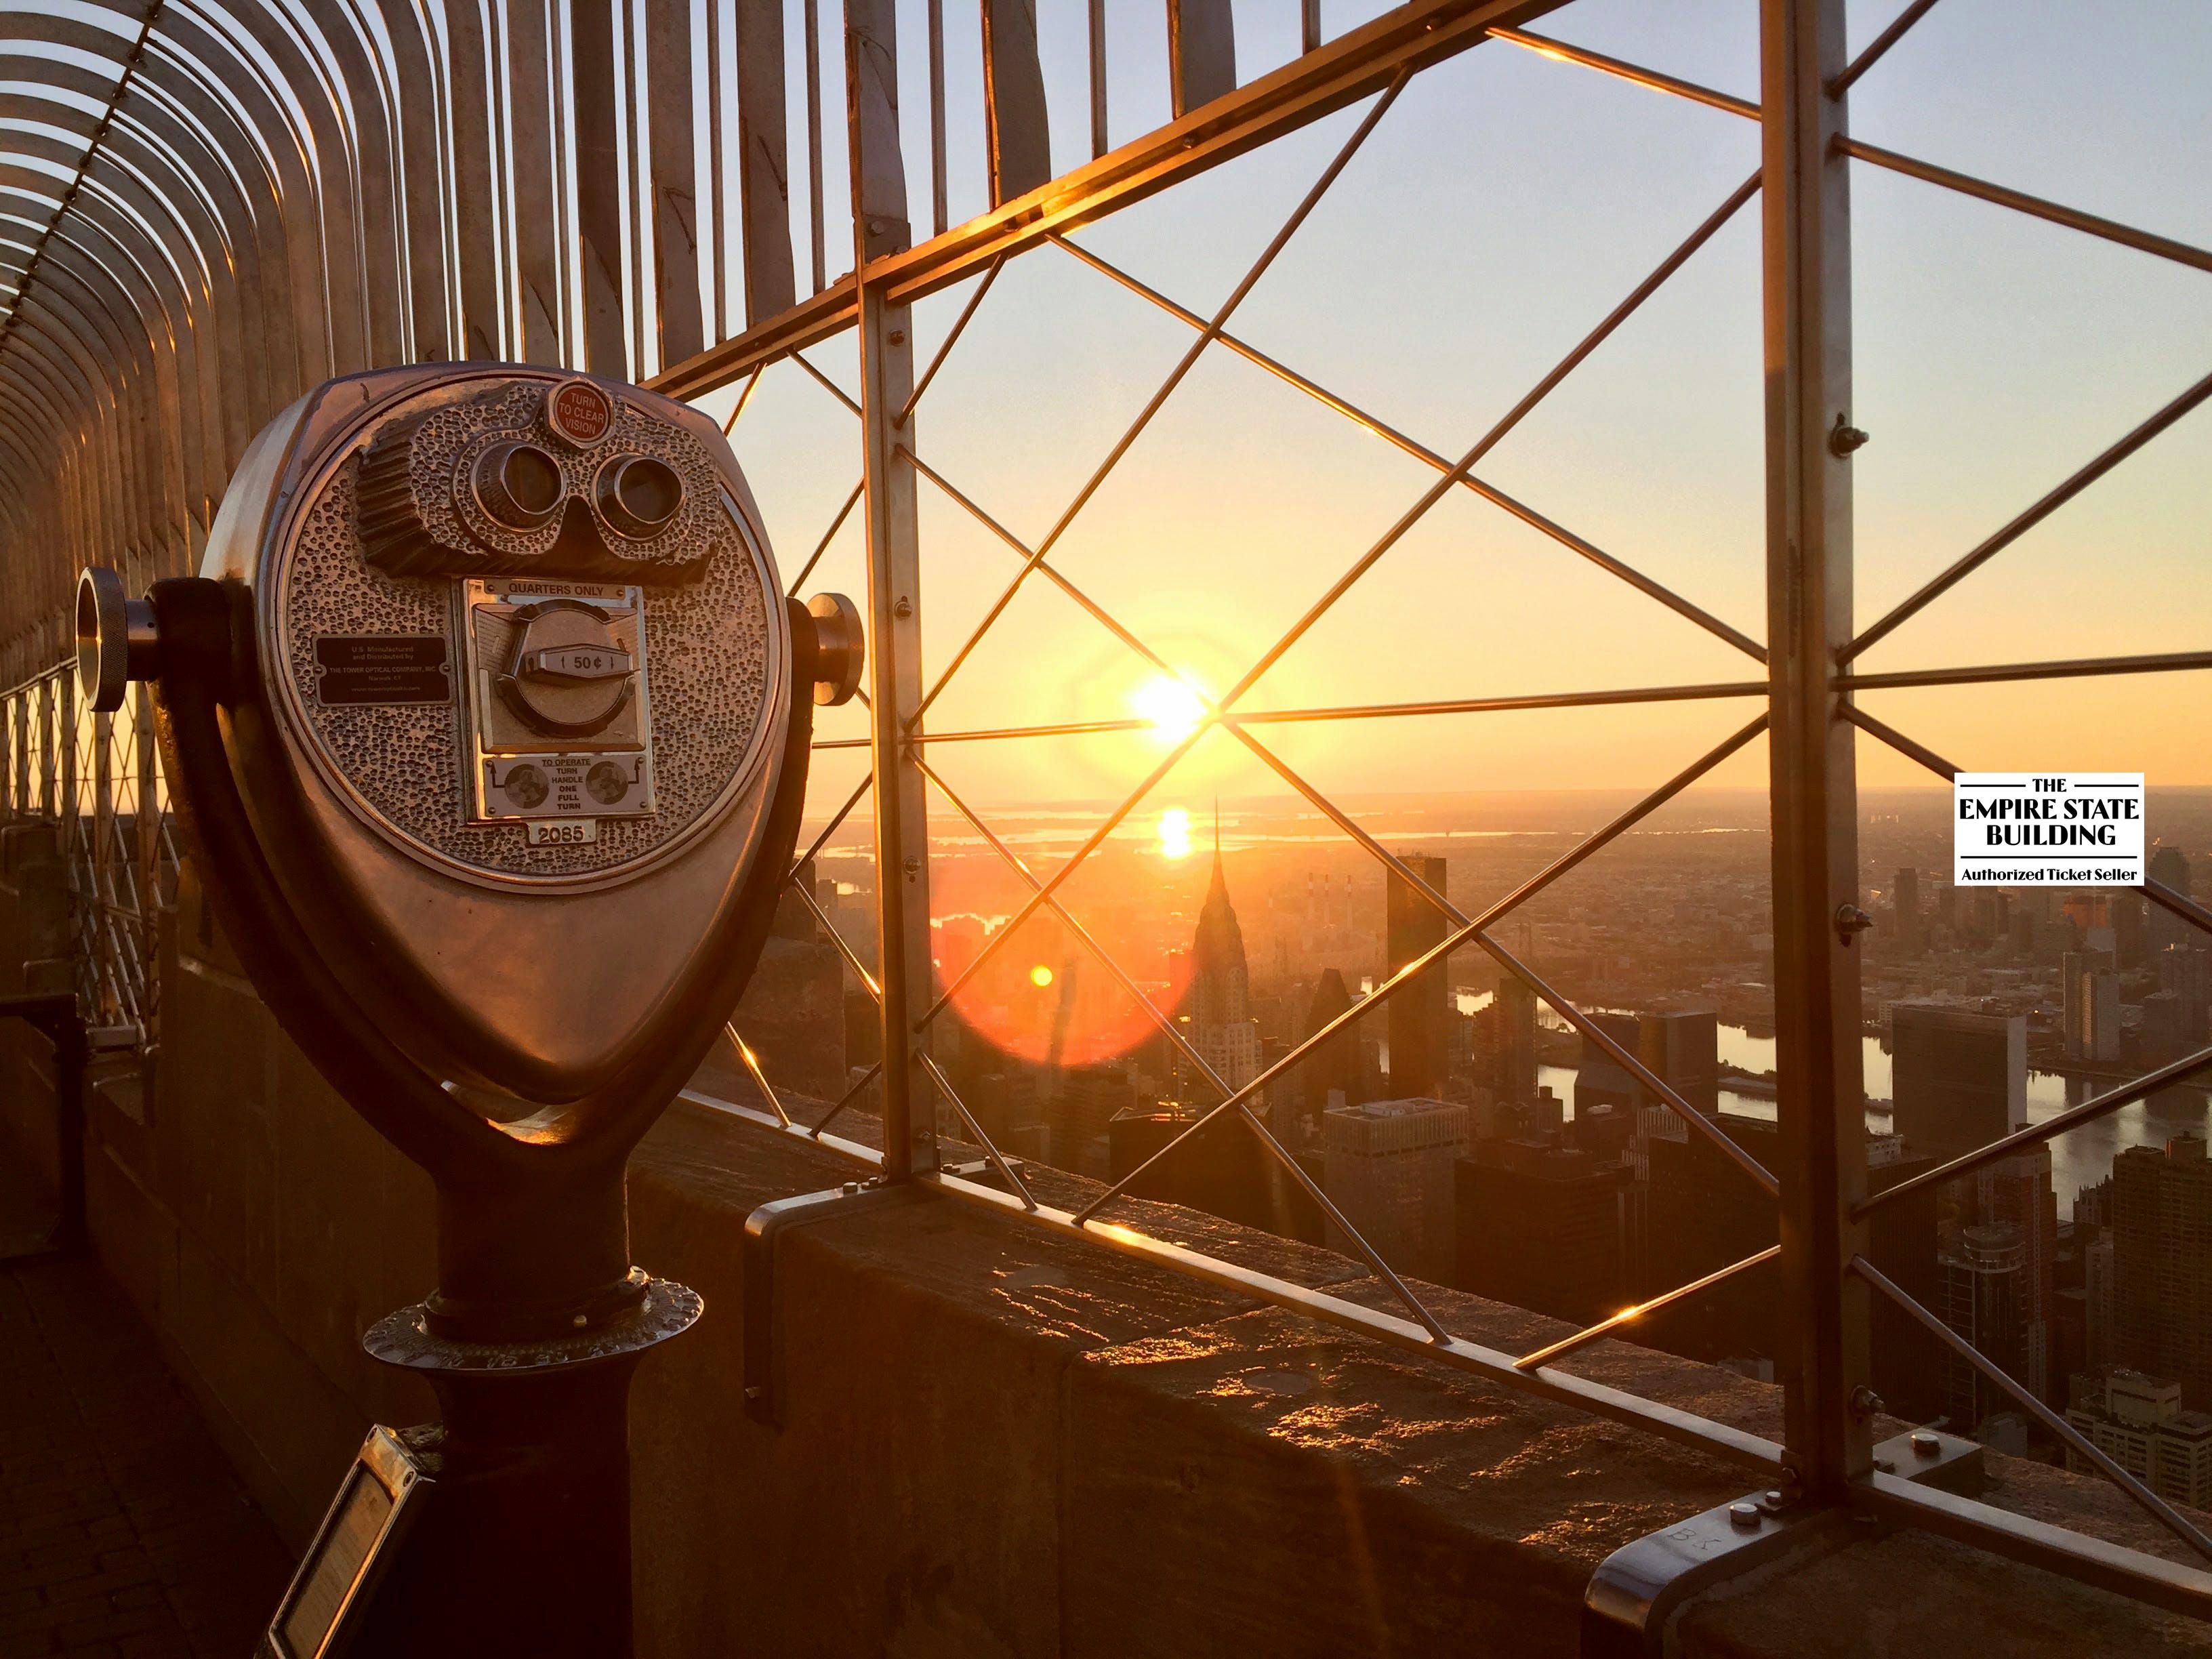 Entradas para el mirador del Empire State Building al amanecer